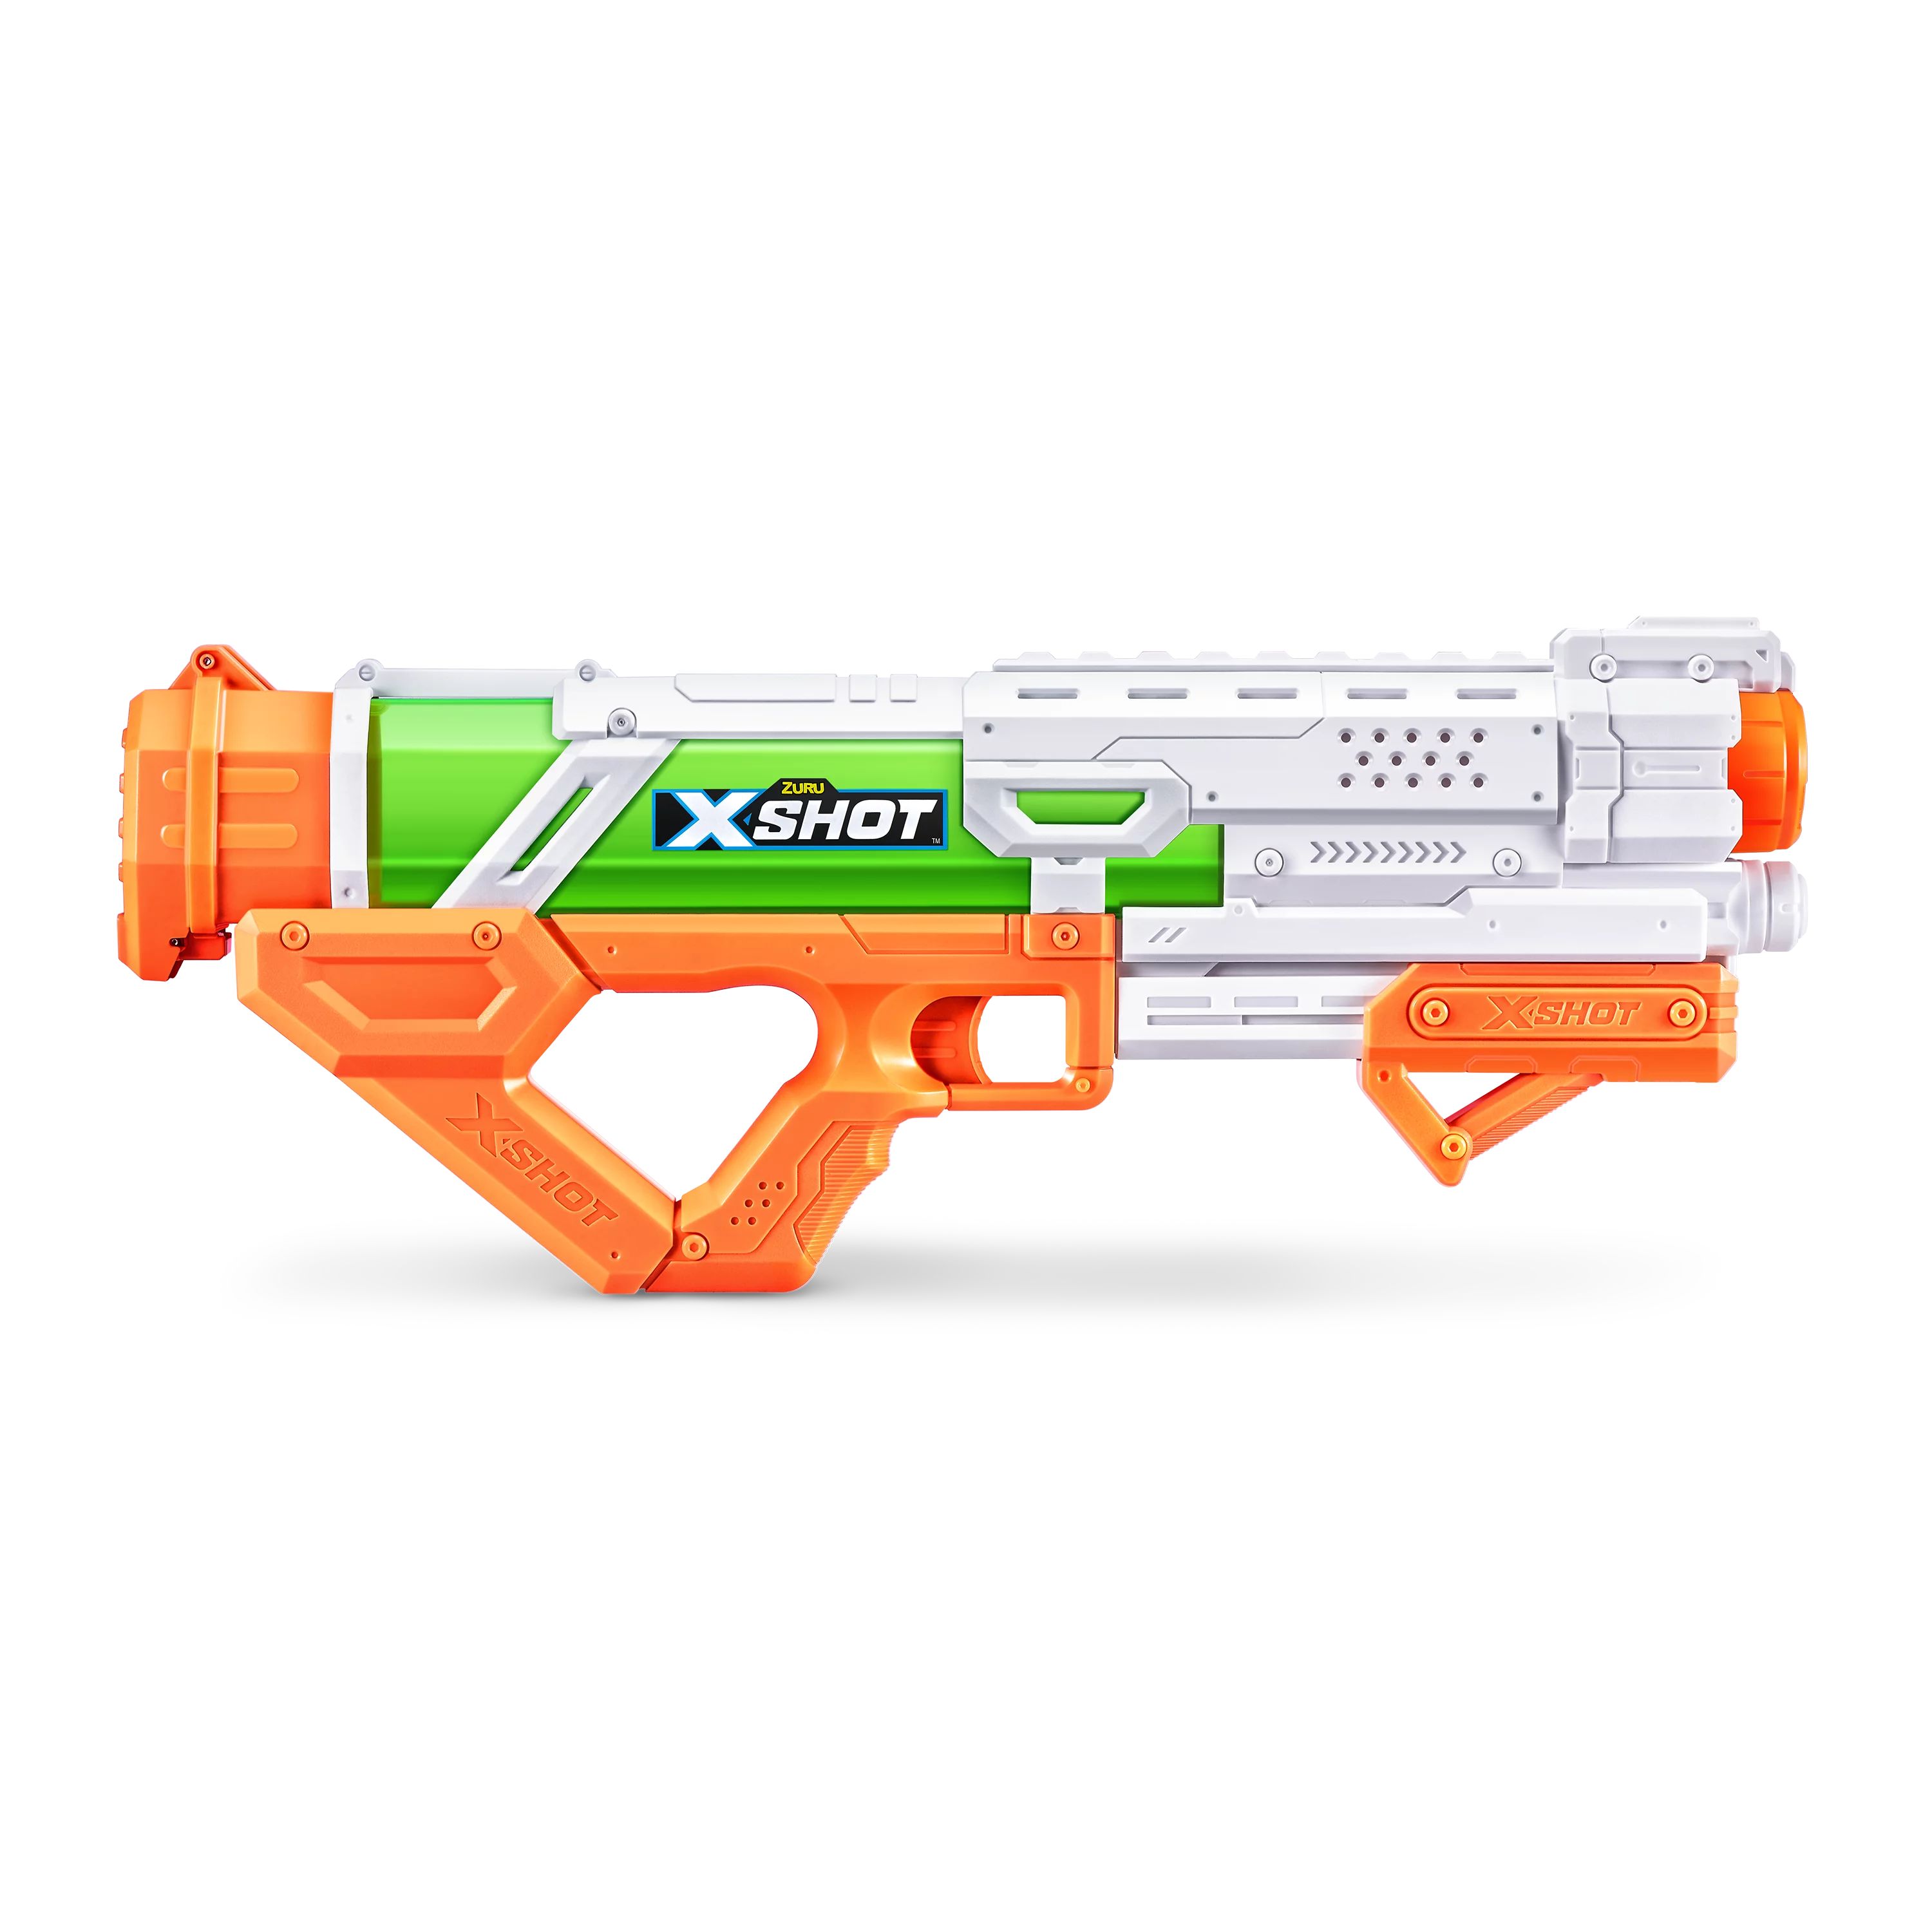 X-Shot Water Fast-Fill Epic Orange Water Blaster by ZURU | Walmart (US)